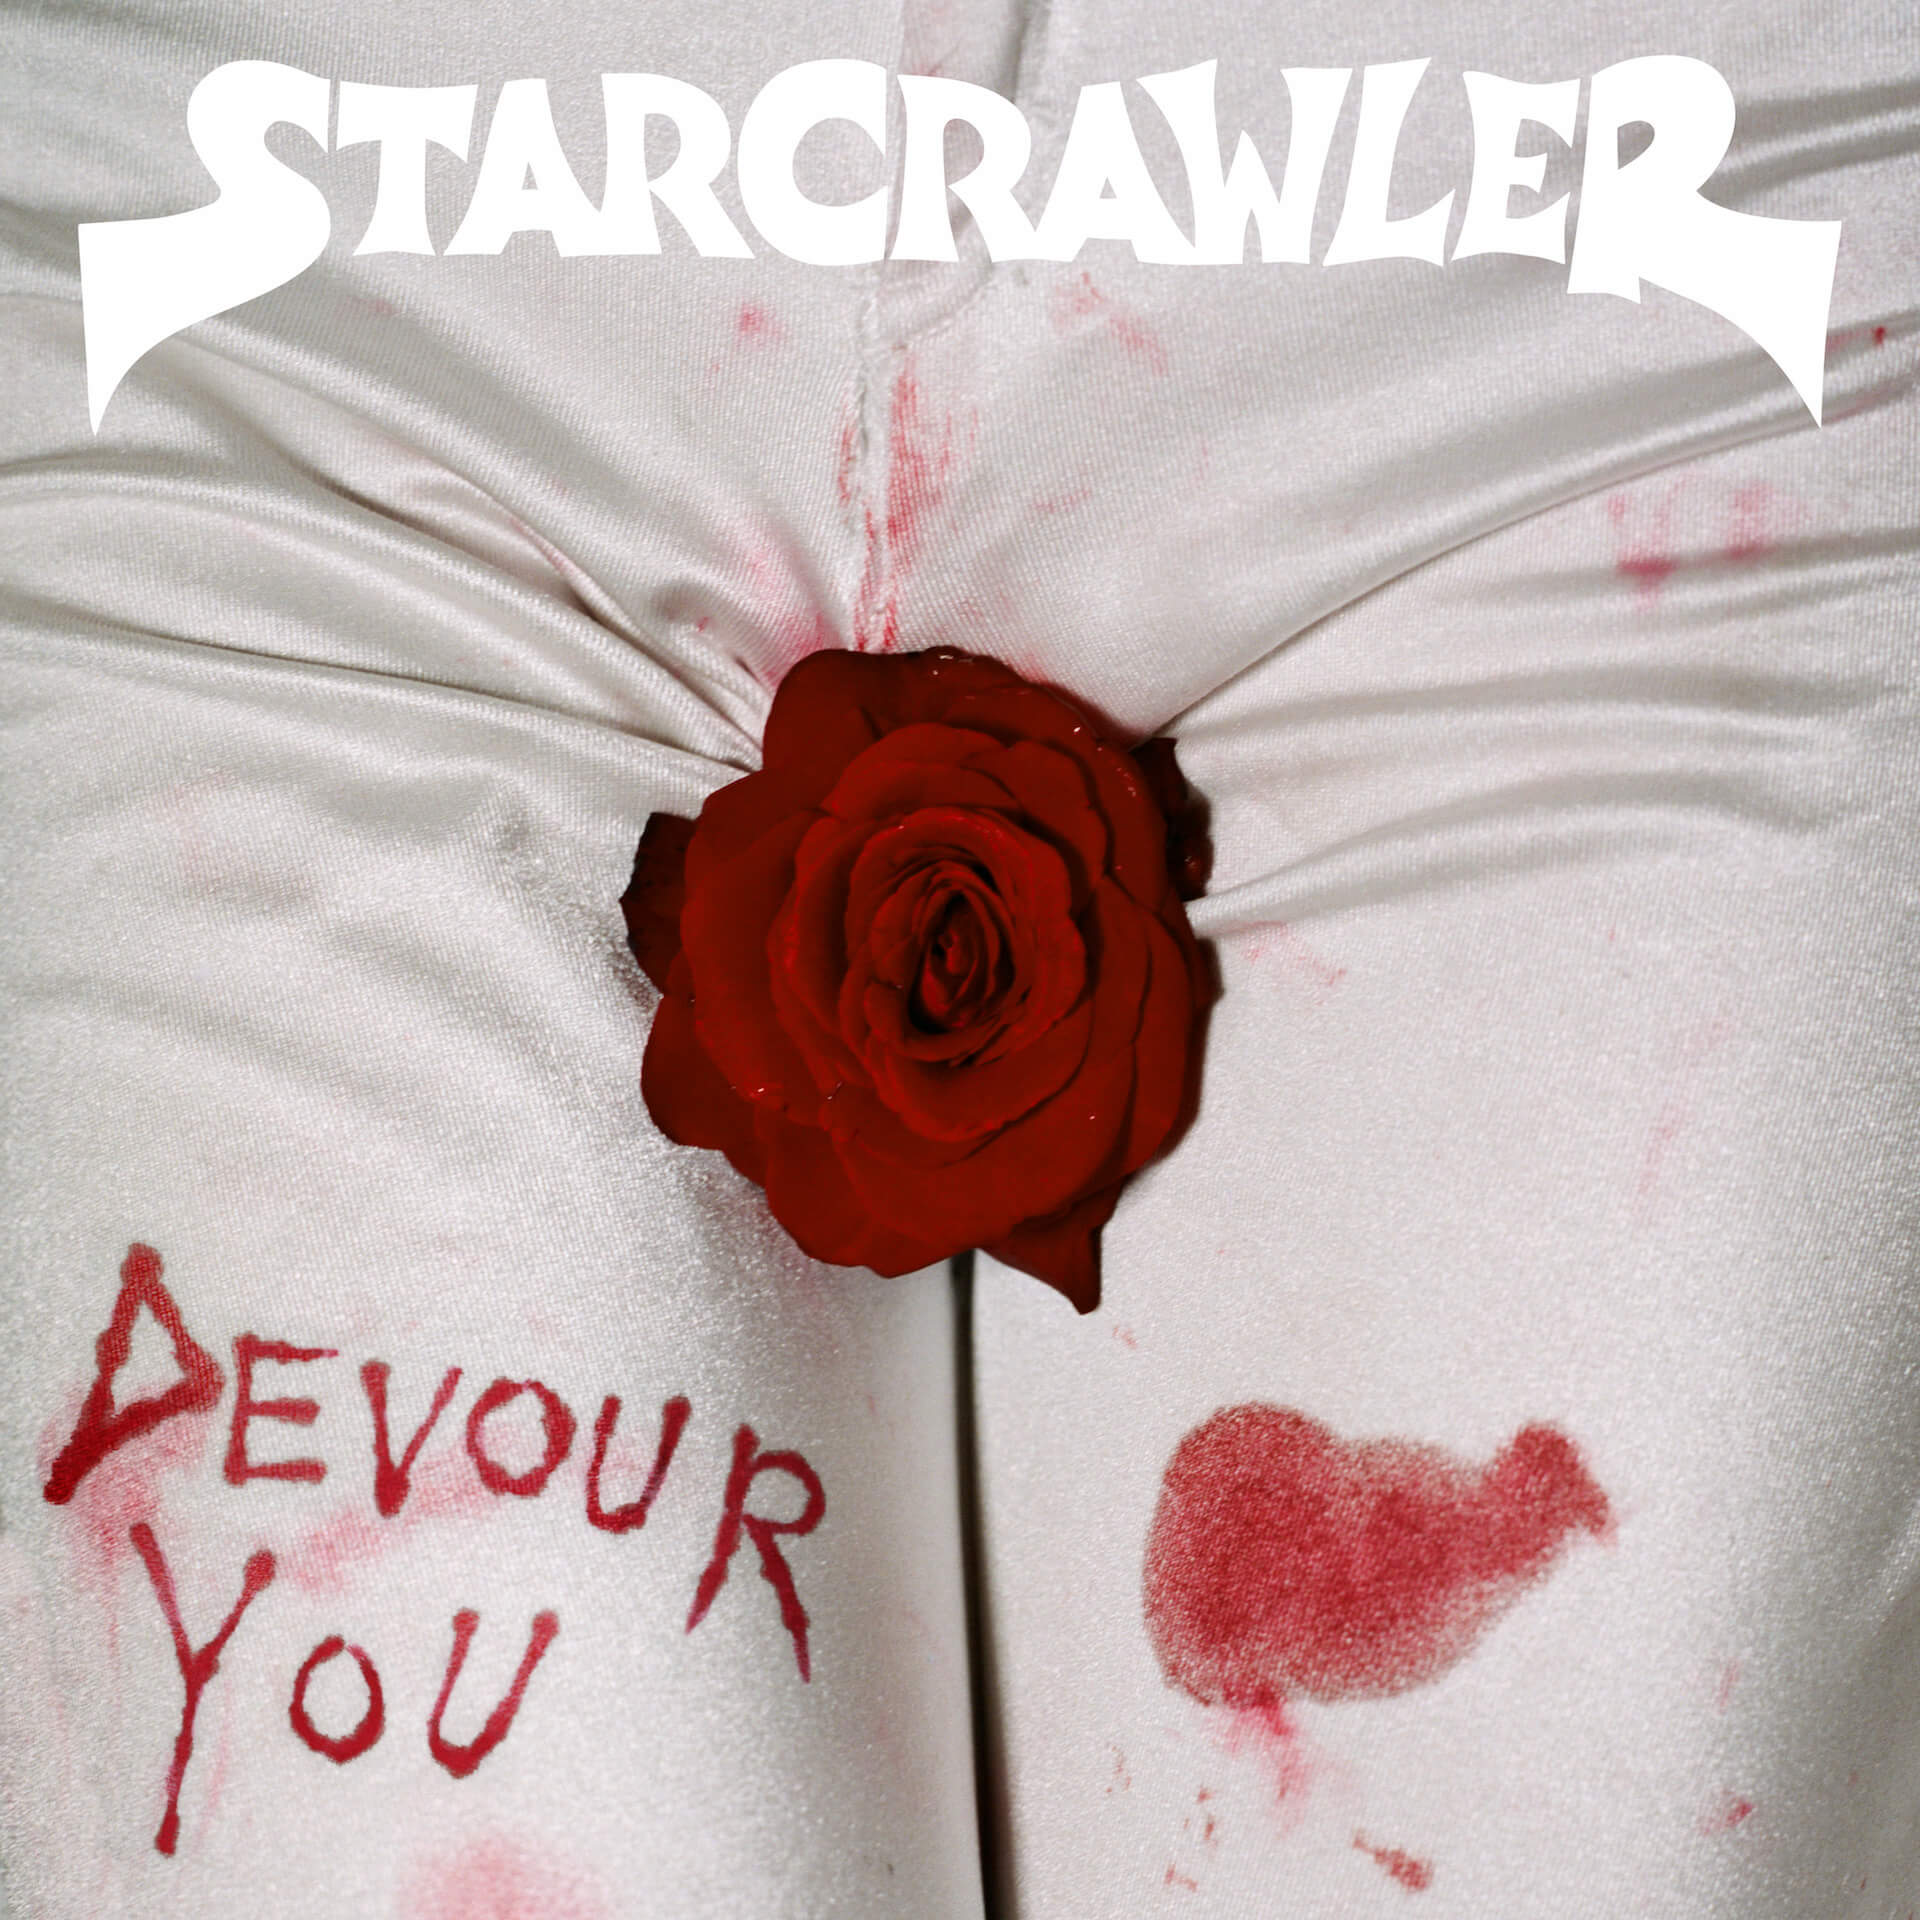 STARCRAWLERがX-girlとのコラボアイテムを発表！2ndアルバム『Devour You』のアロウ・デ・ワイルドのビジュアルを使用したTシャツなど登場 music200907_starcrawler_1